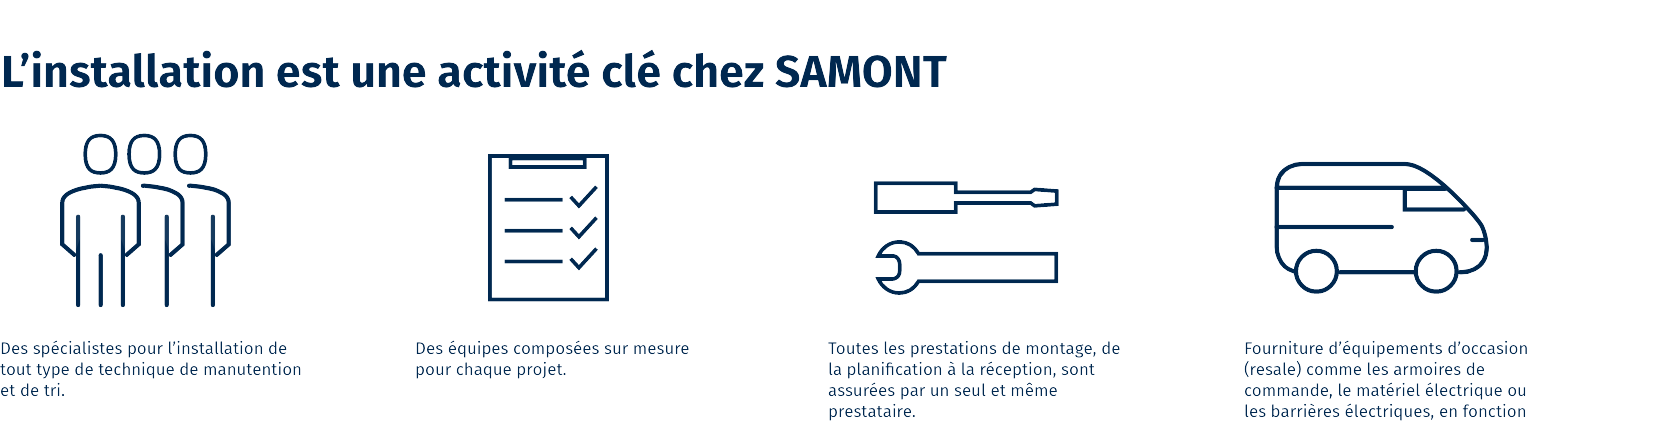 SAMONT_Installation_FR